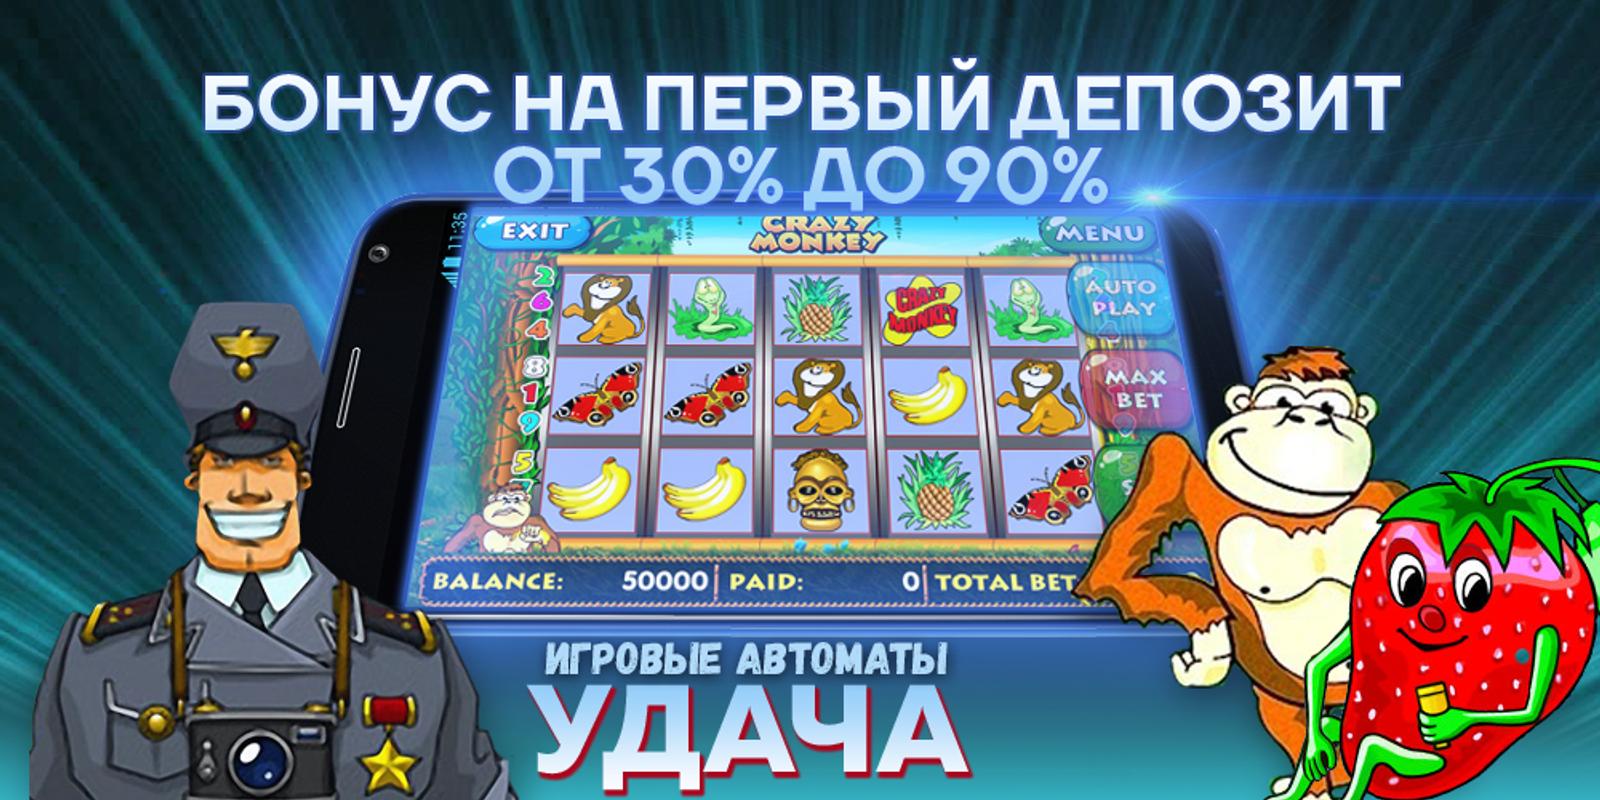 Игровые автоматы депозит в рублях в россии. Игровые автоматы с первым депозитом. Игровые автоматы без первого депозита. Игровые автоматы с маленьким депозитом. Автомат удачи.